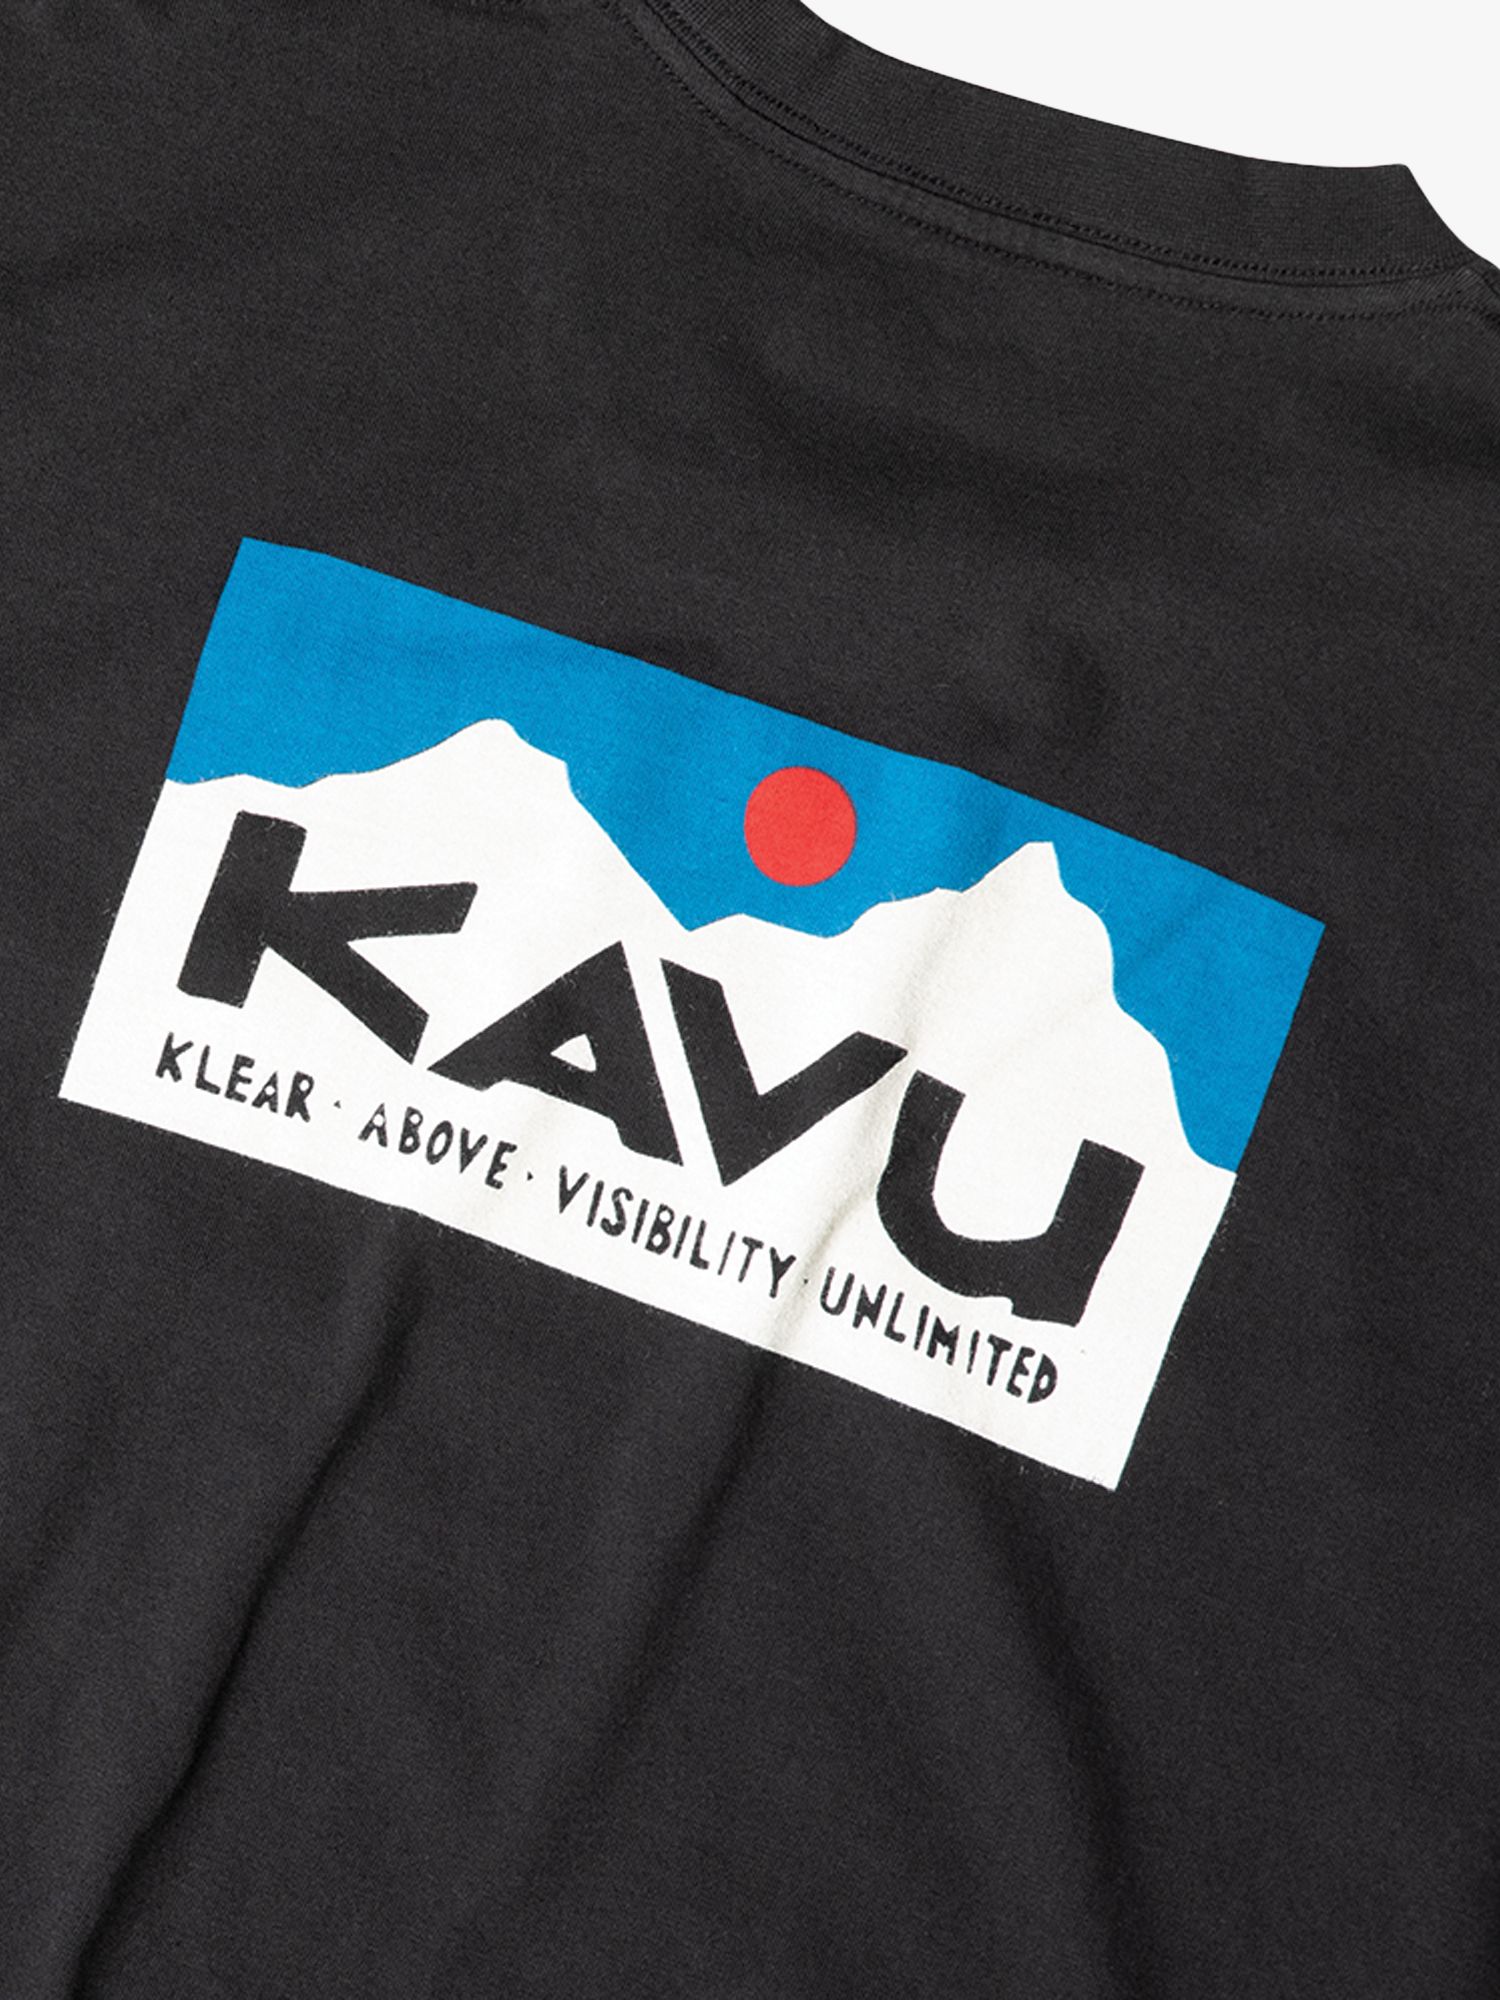 KAVU Klear Above Etch Art Organic Cotton T-Shirt, Black, XL